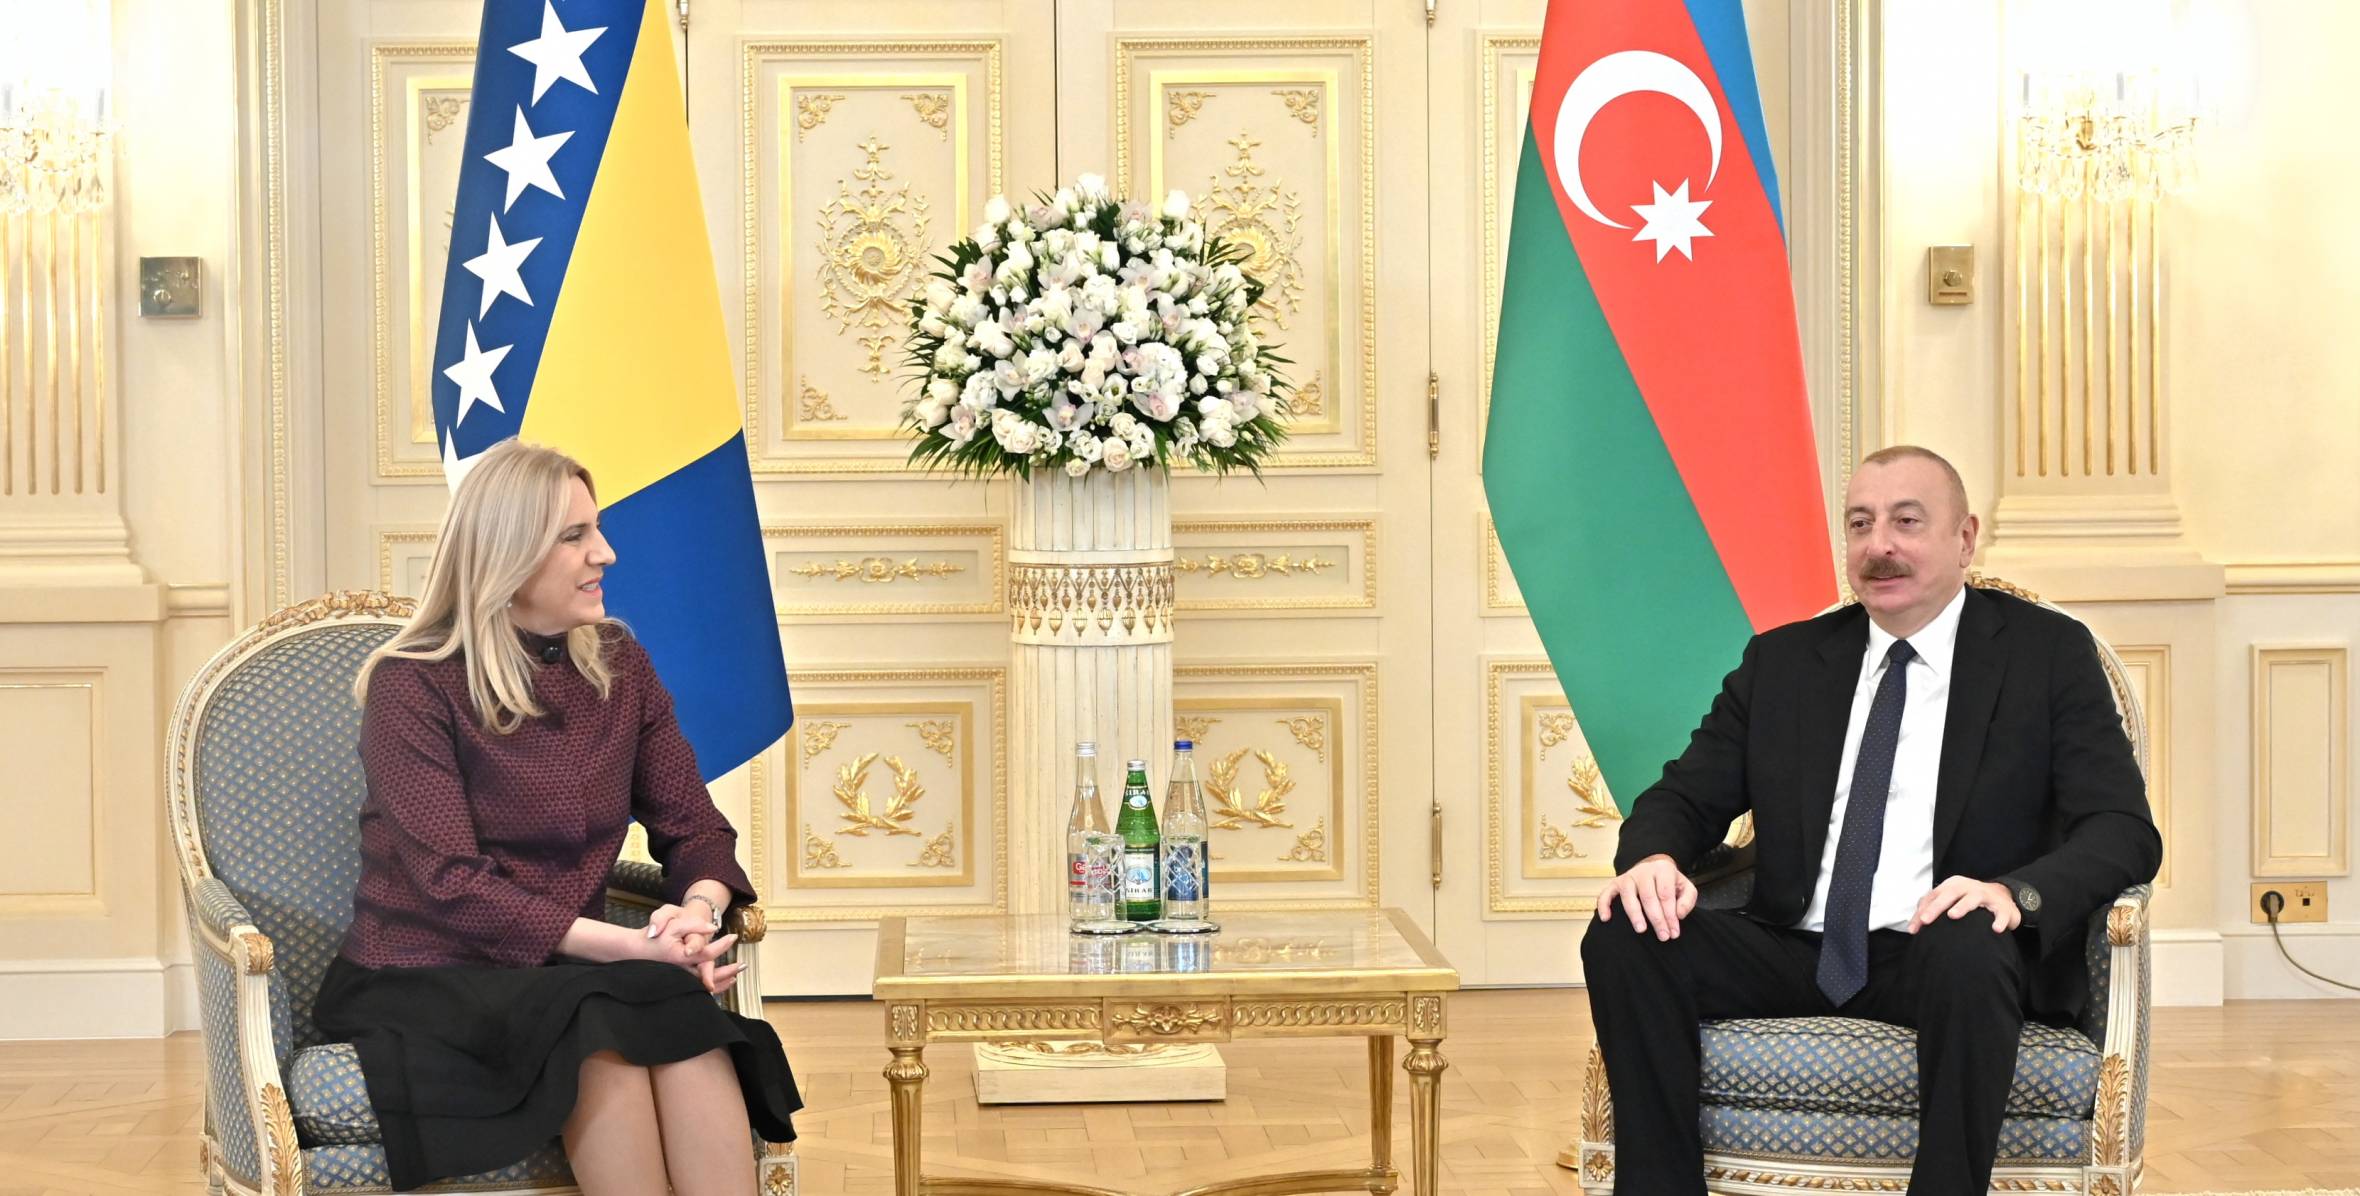 Ильхам Алиев встретился с председателем Президиума Боснии и Герцеговины